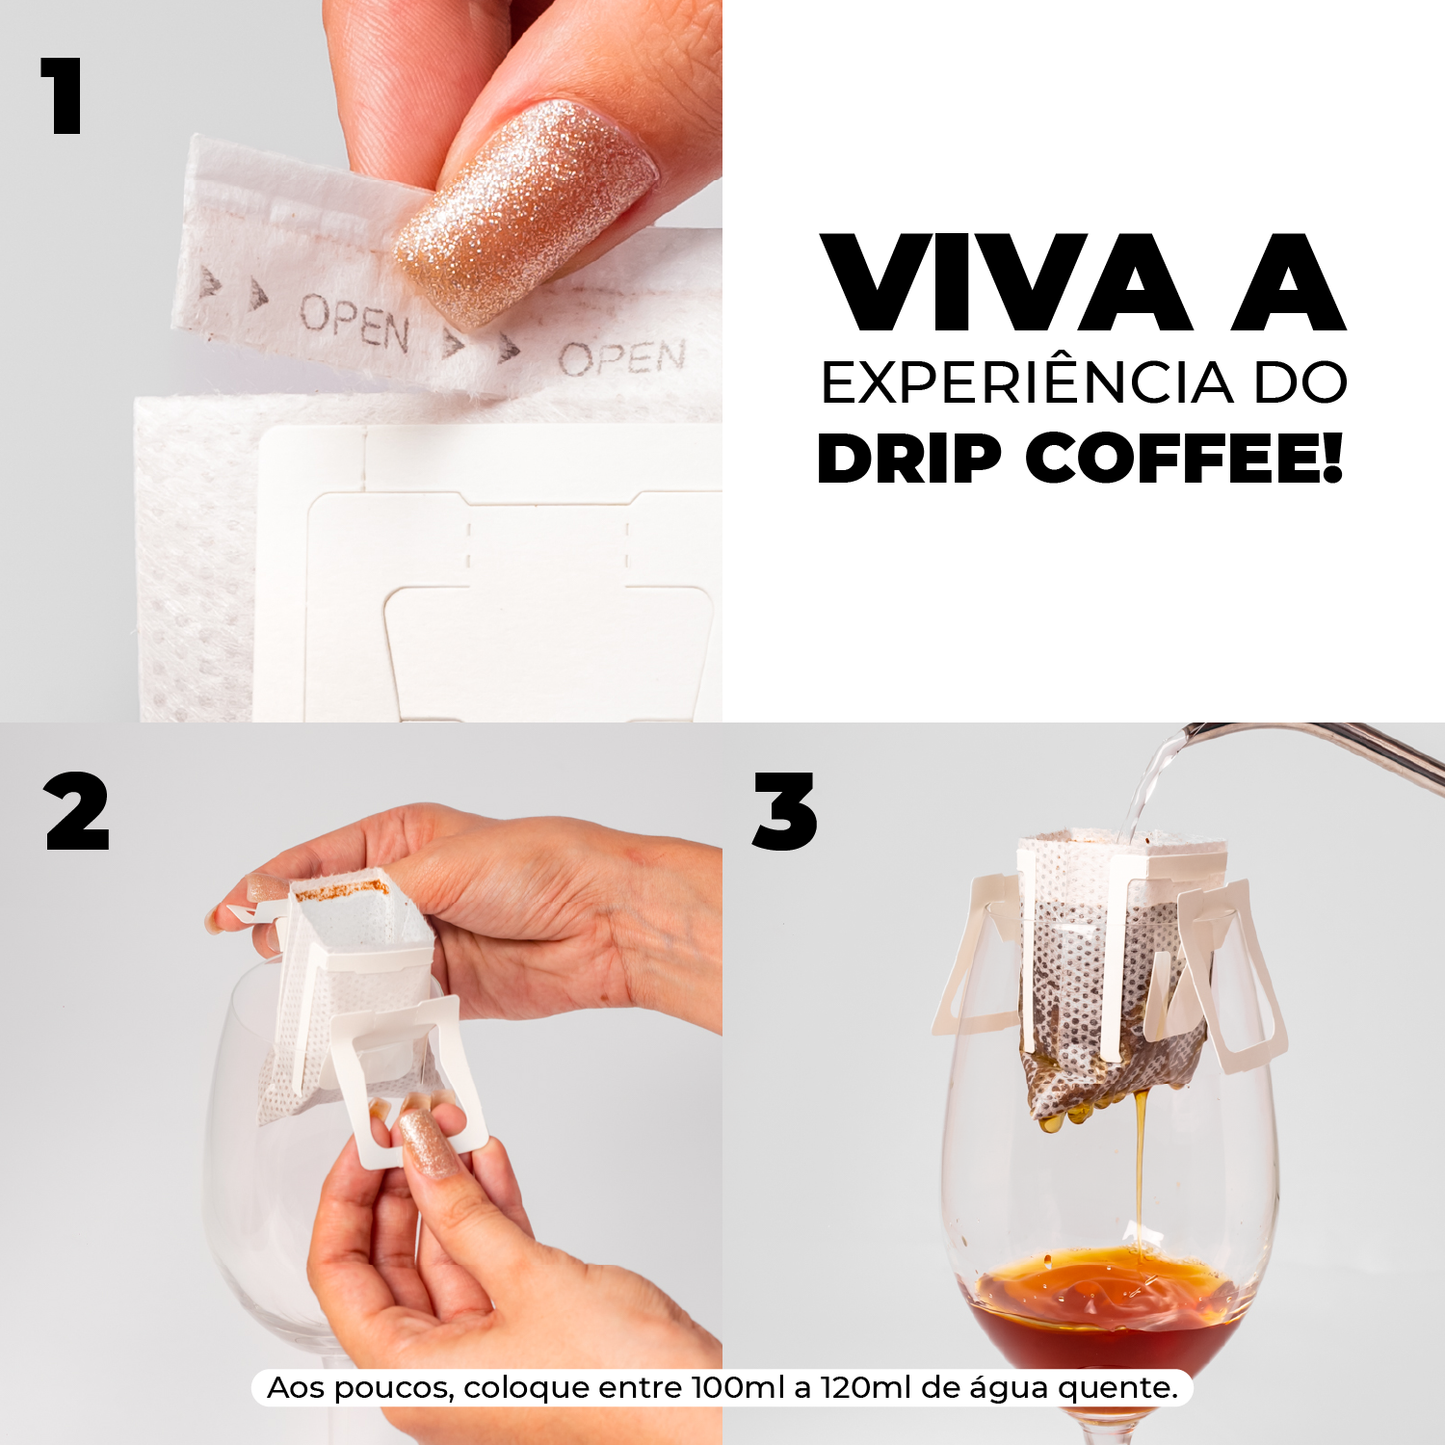 Assinatura Café Clássico | Drip Coffee - 10 Sachês